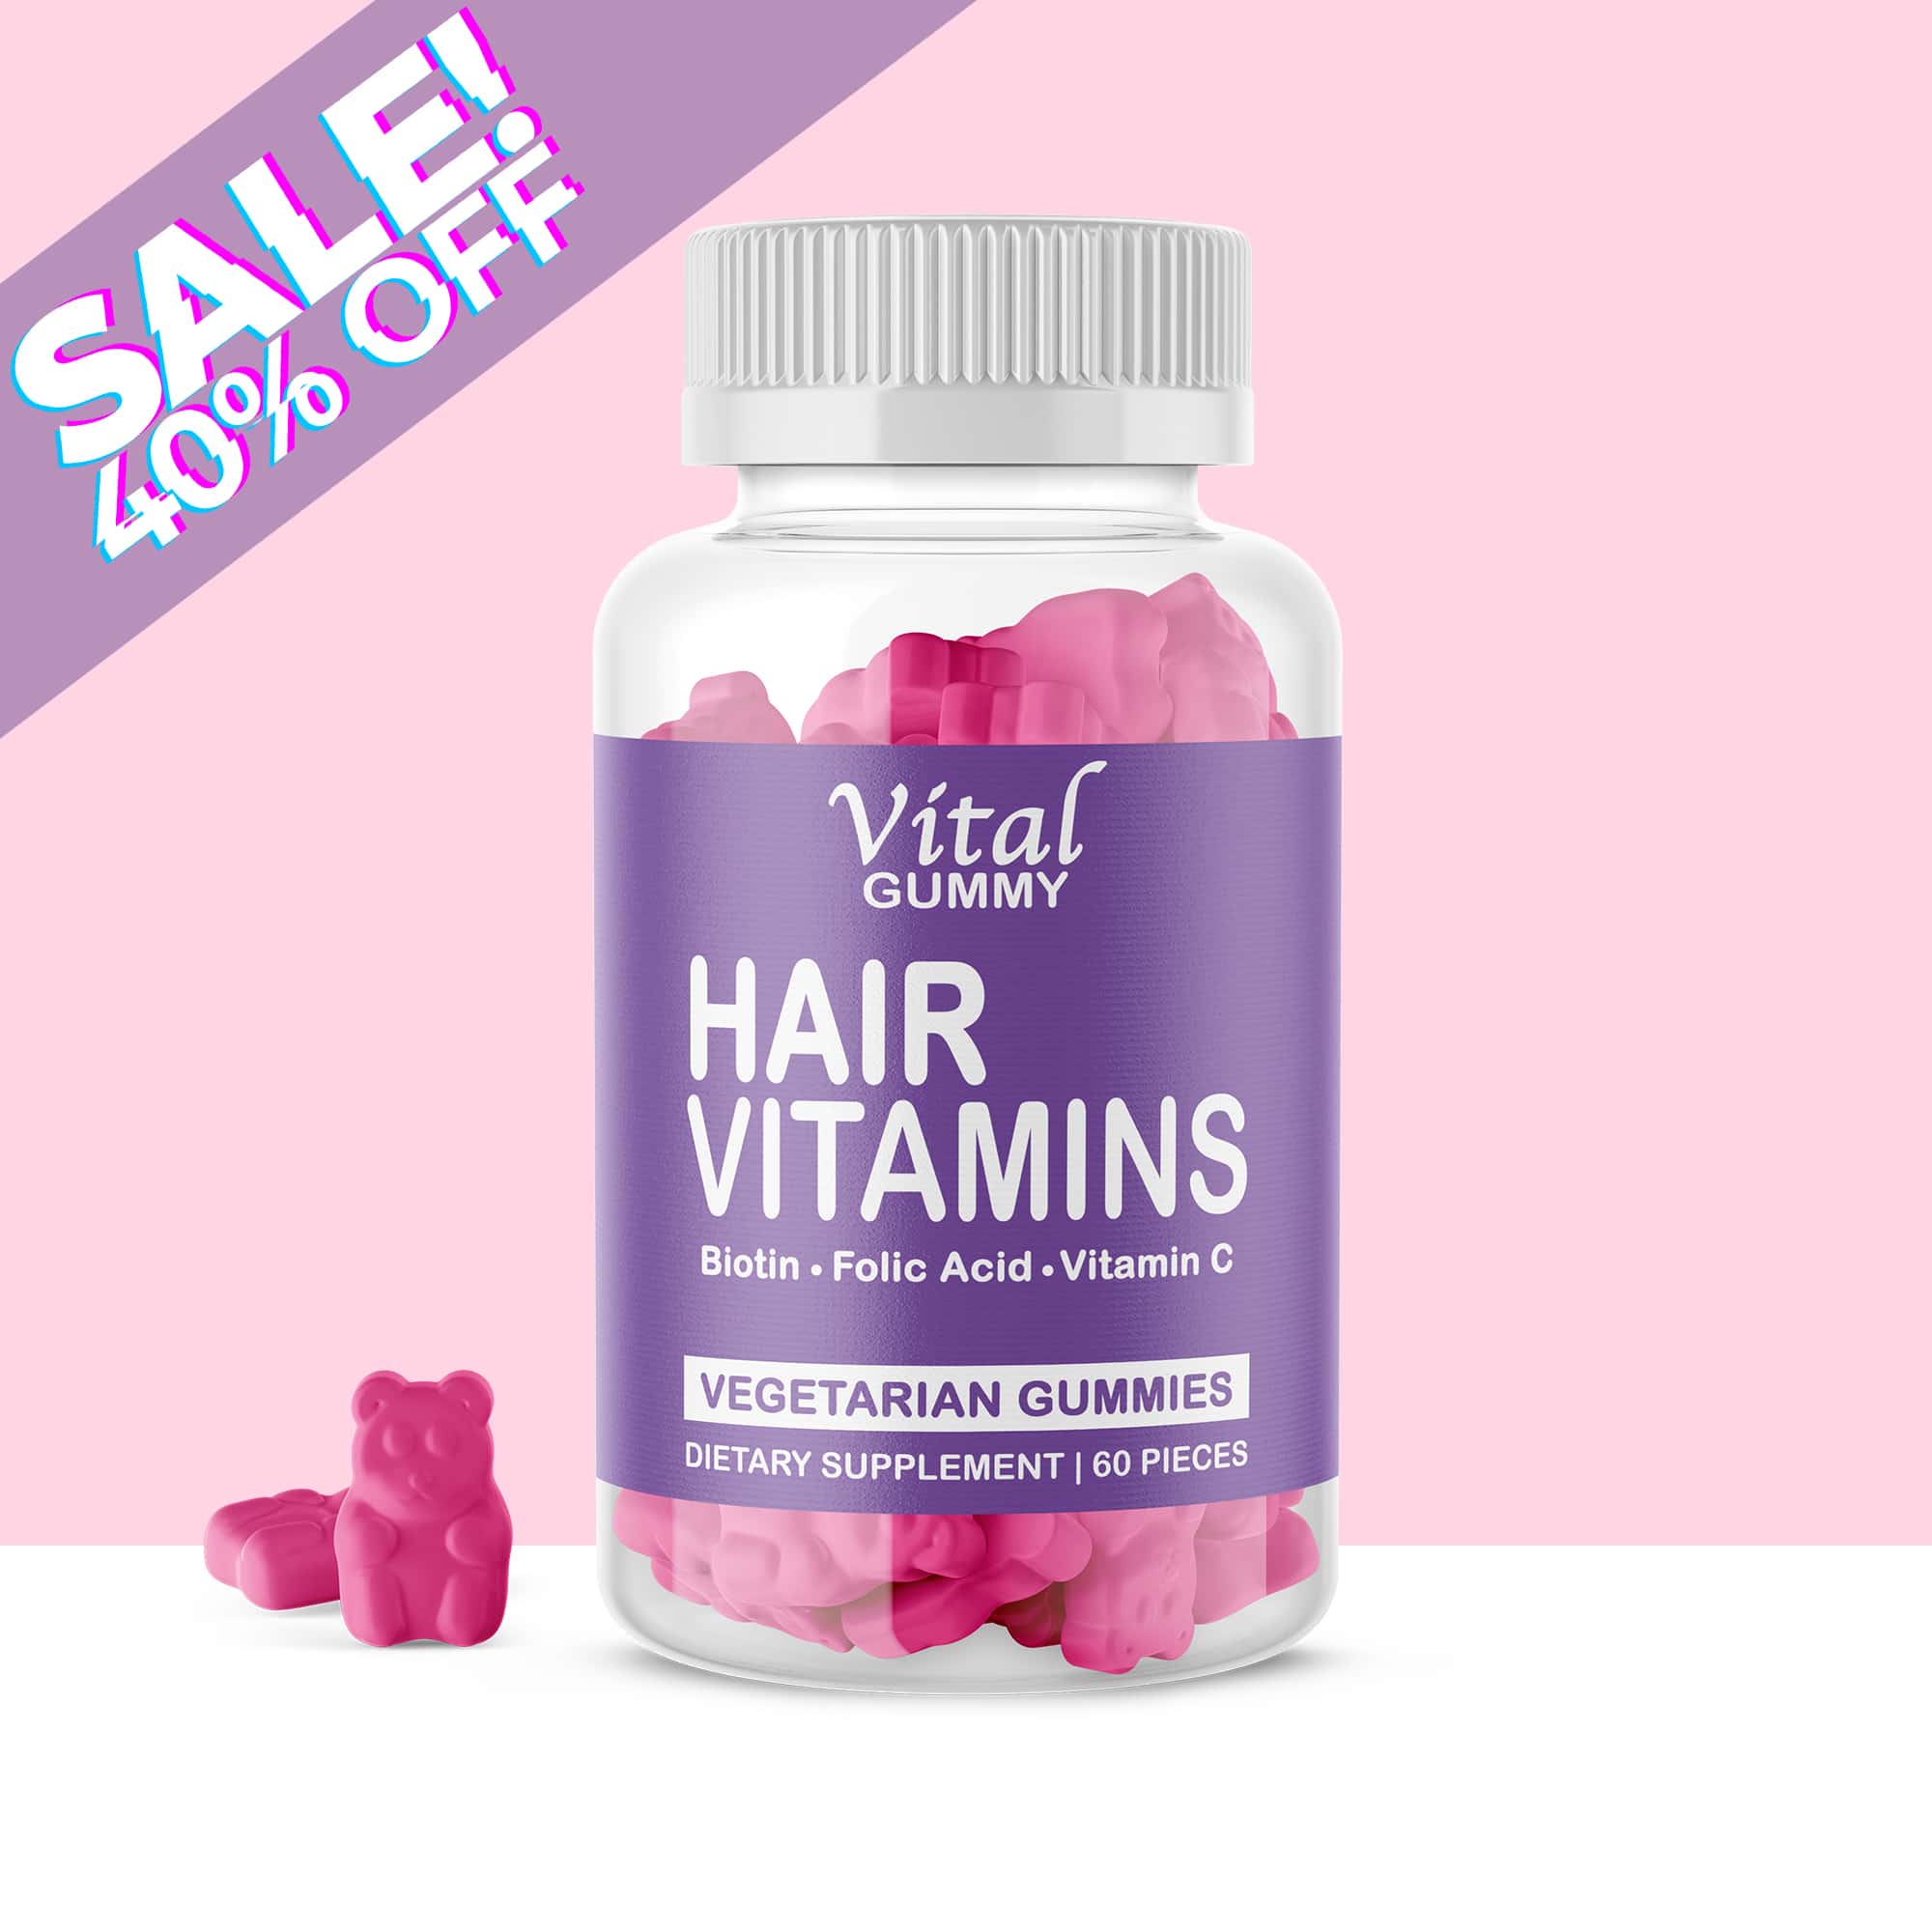 Hair Vitamins Vital Gummy